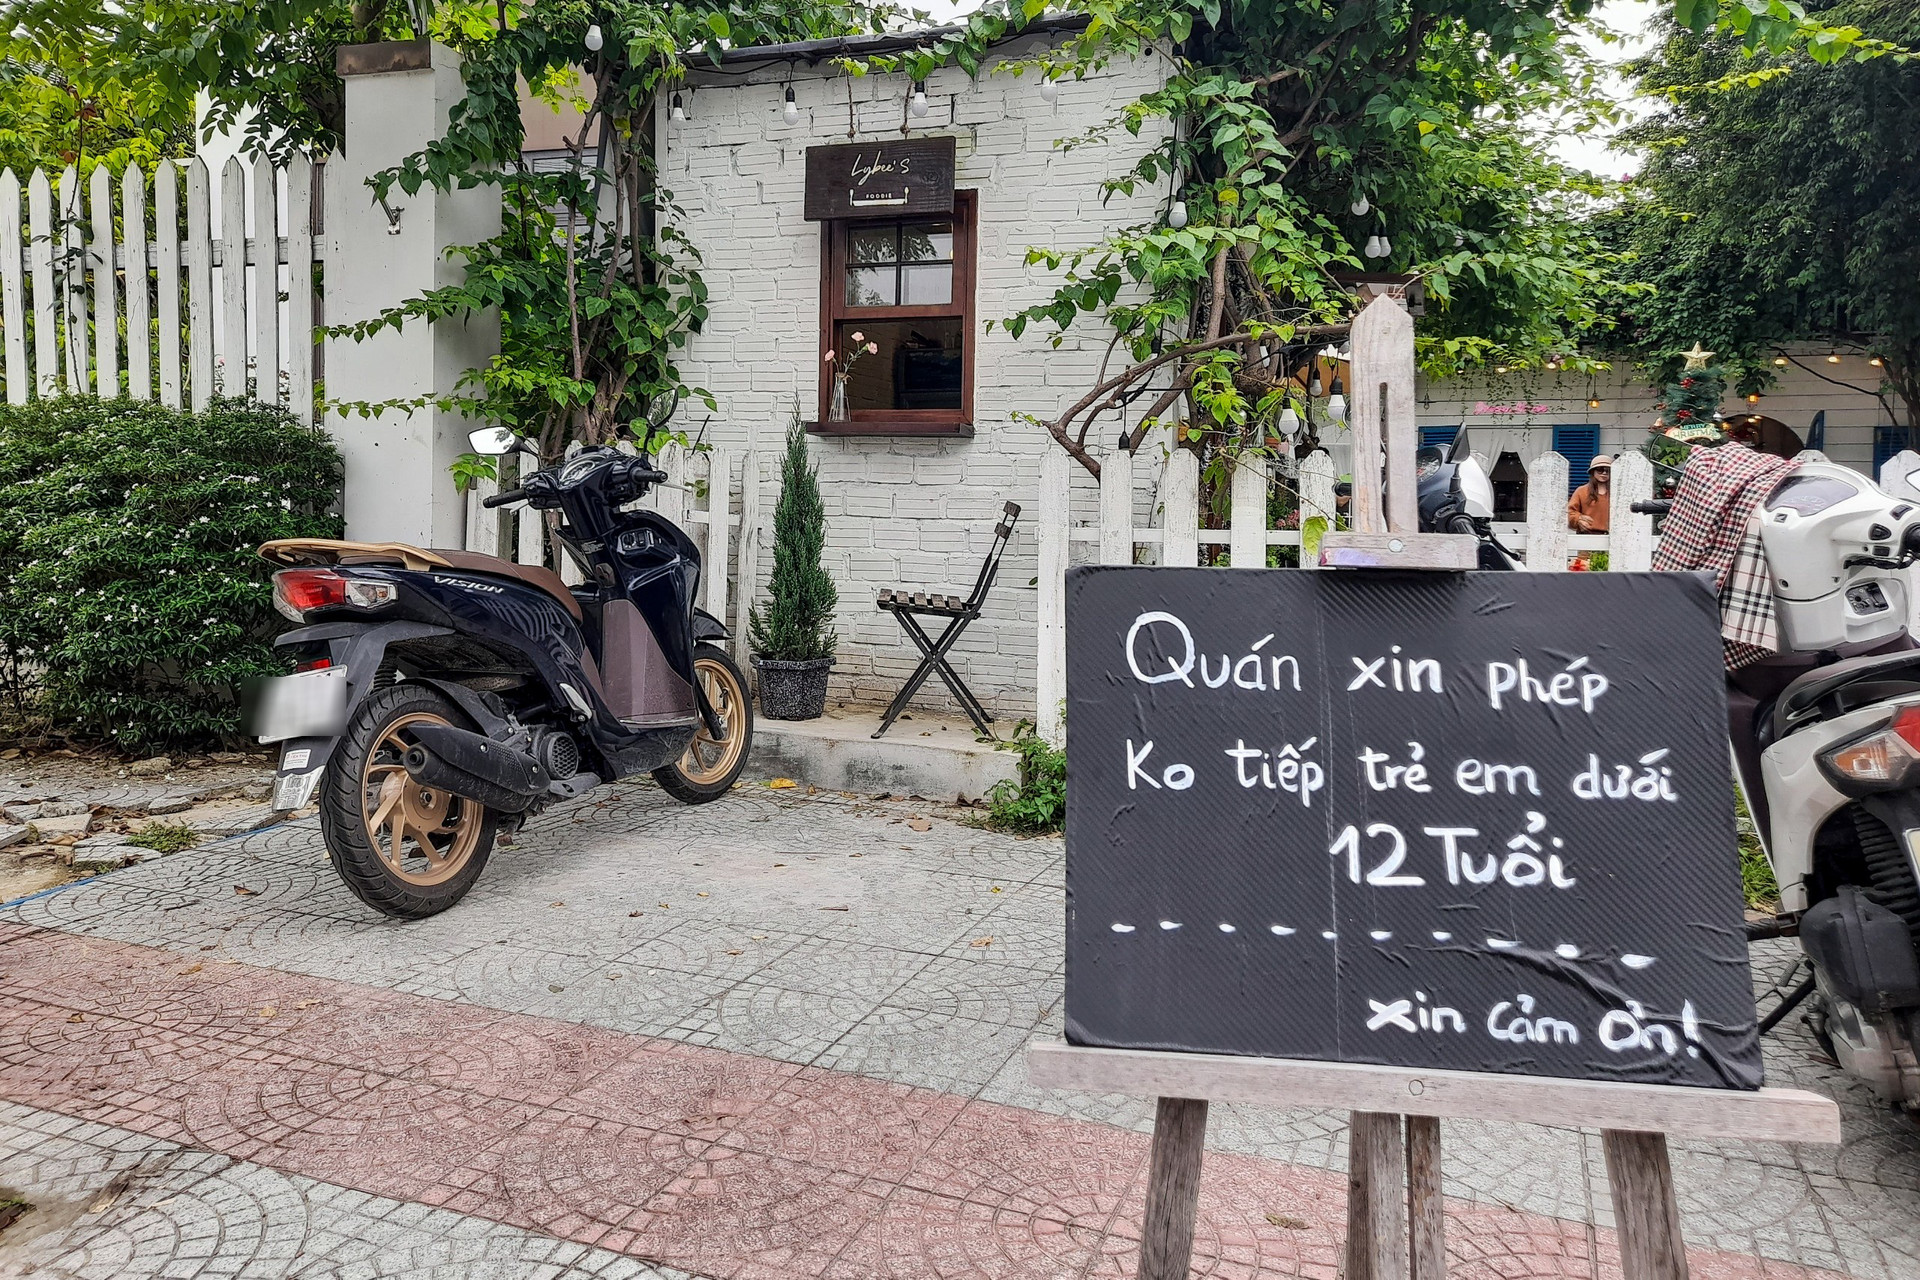 Quán cà phê ở Đà Nẵng gây tranh cãi khi nói không với trẻ dưới 12 tuổi - 1